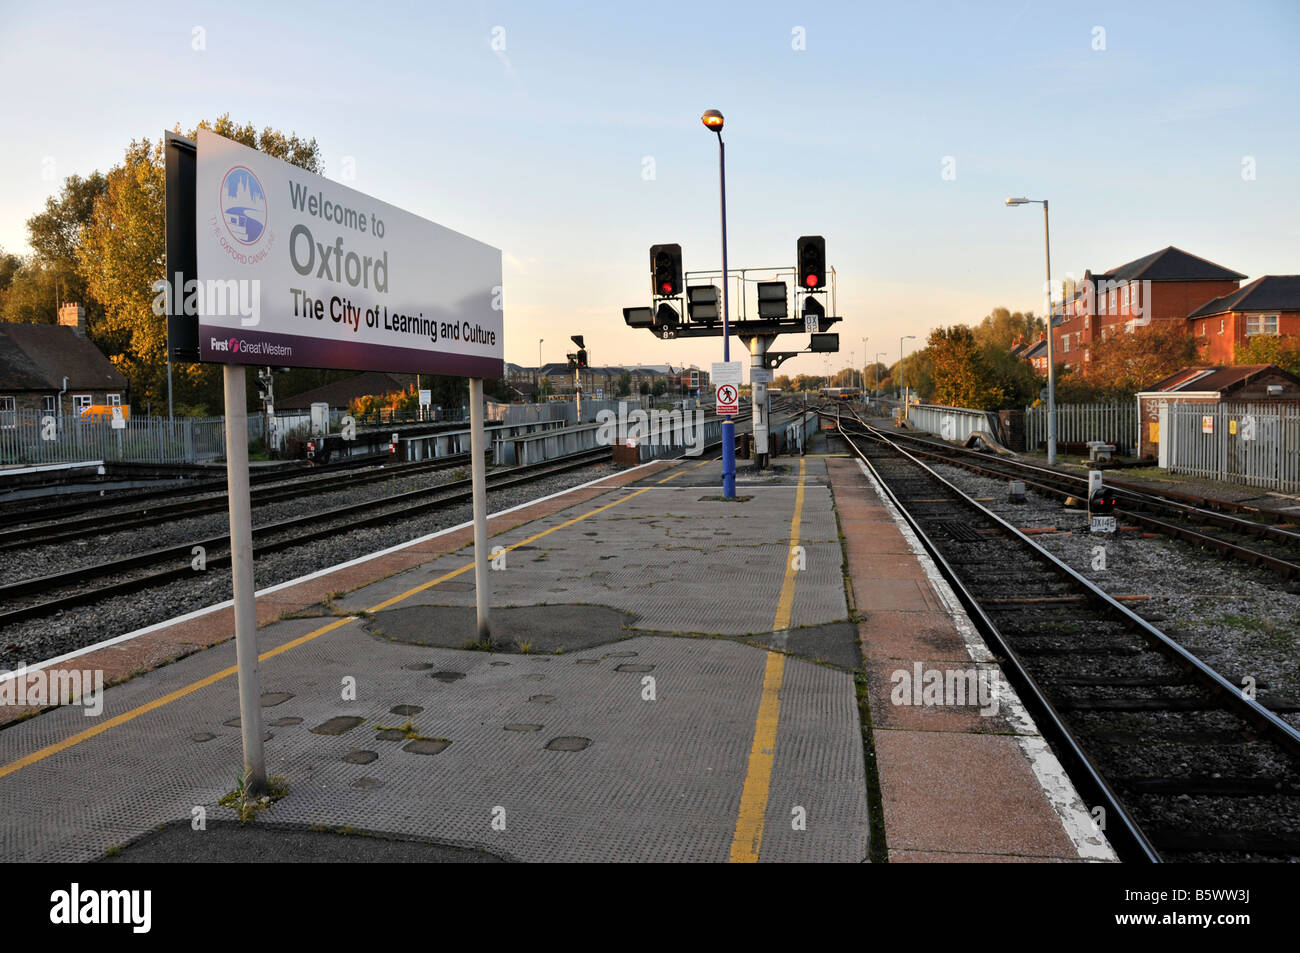 Cartel de bienvenida a bordo en la estación de tren Oxford mostrando "Bienvenido a Oxford - Ciudad del aprendizaje y de la cultura". Foto de stock